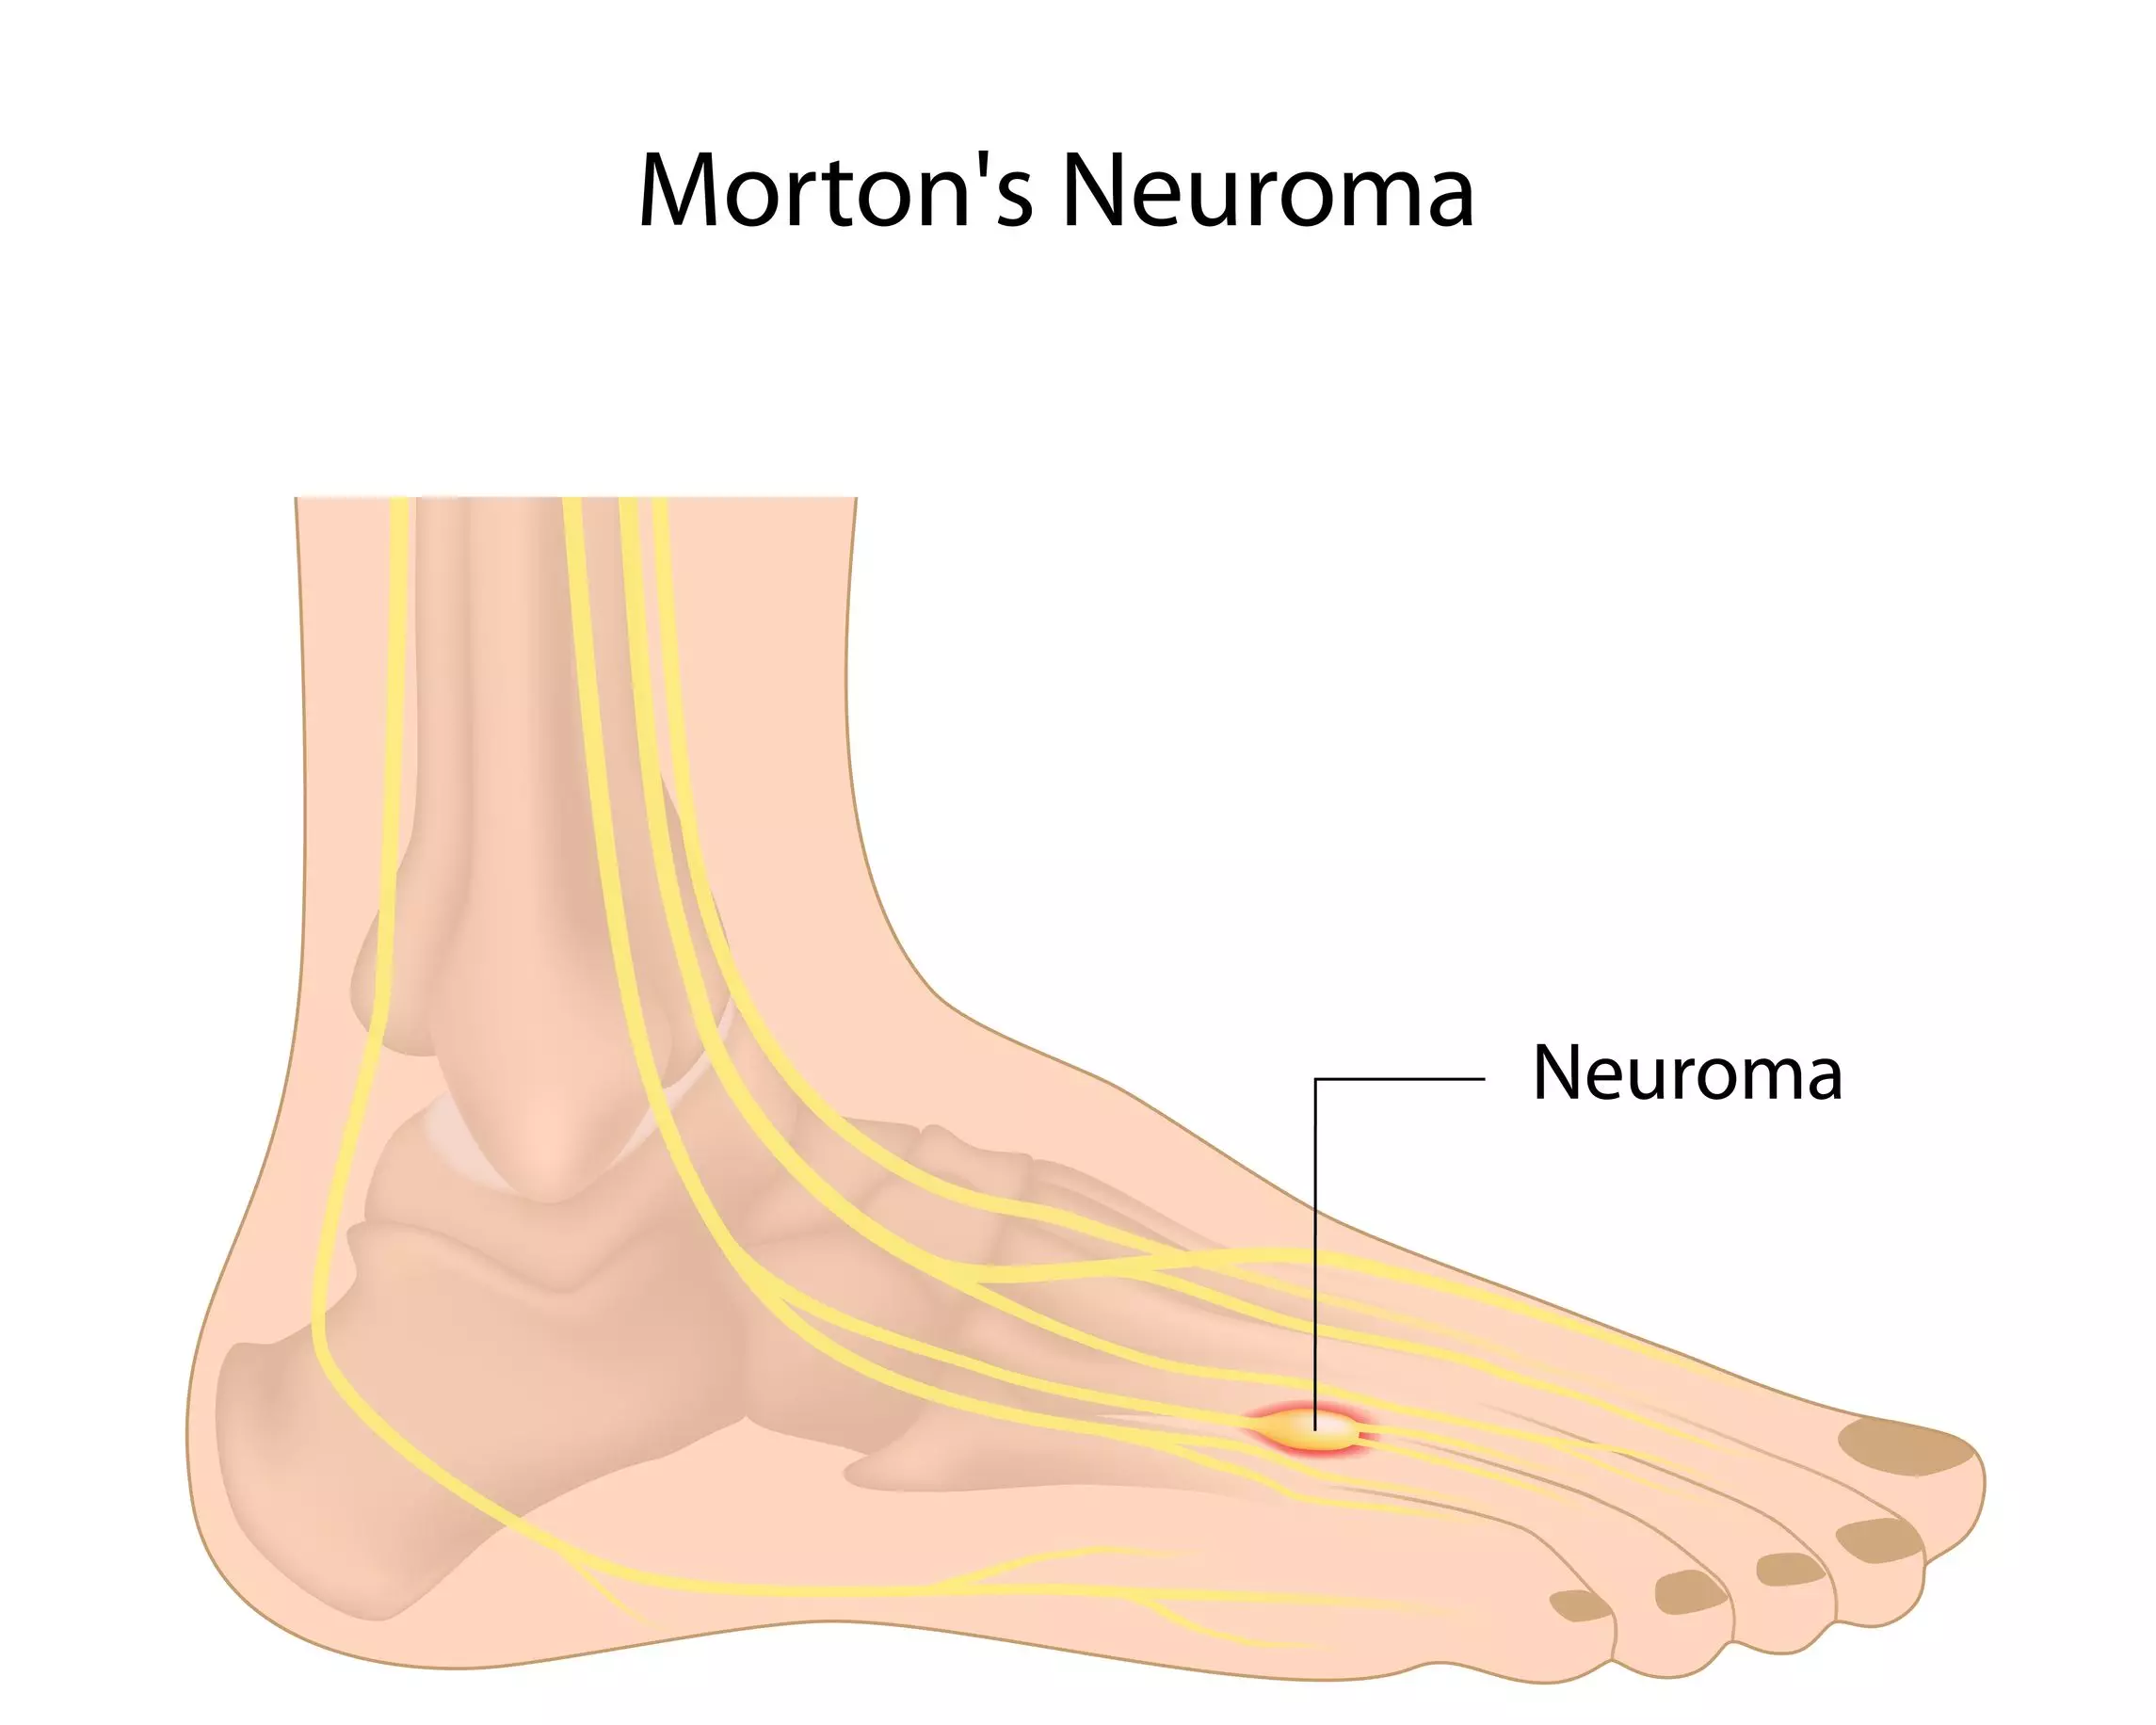 ¿Sabes qué es el neuroma de Morton?